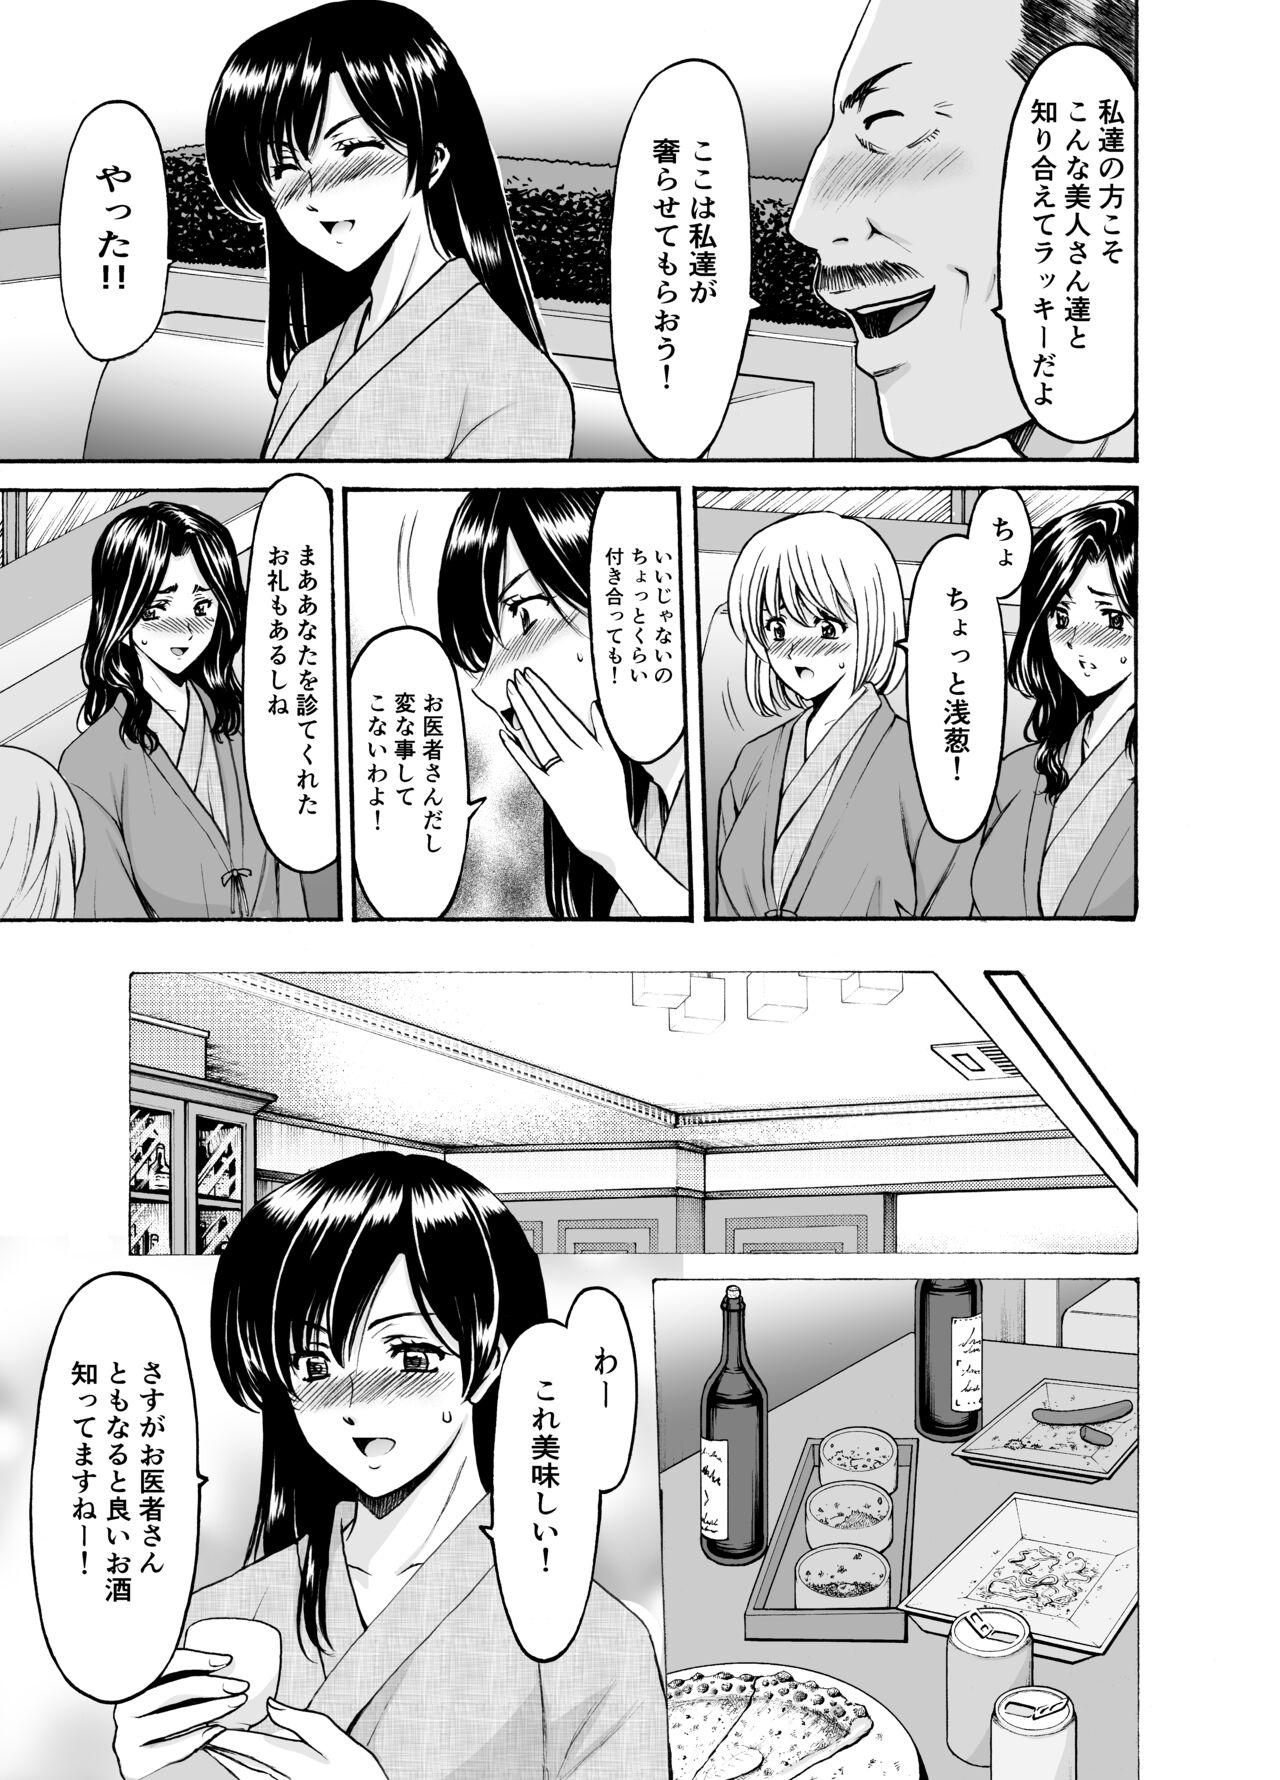 Boob Hitozuma × 3 Yukemuri Ryou Jou 1 - Original Deutsch - Page 11